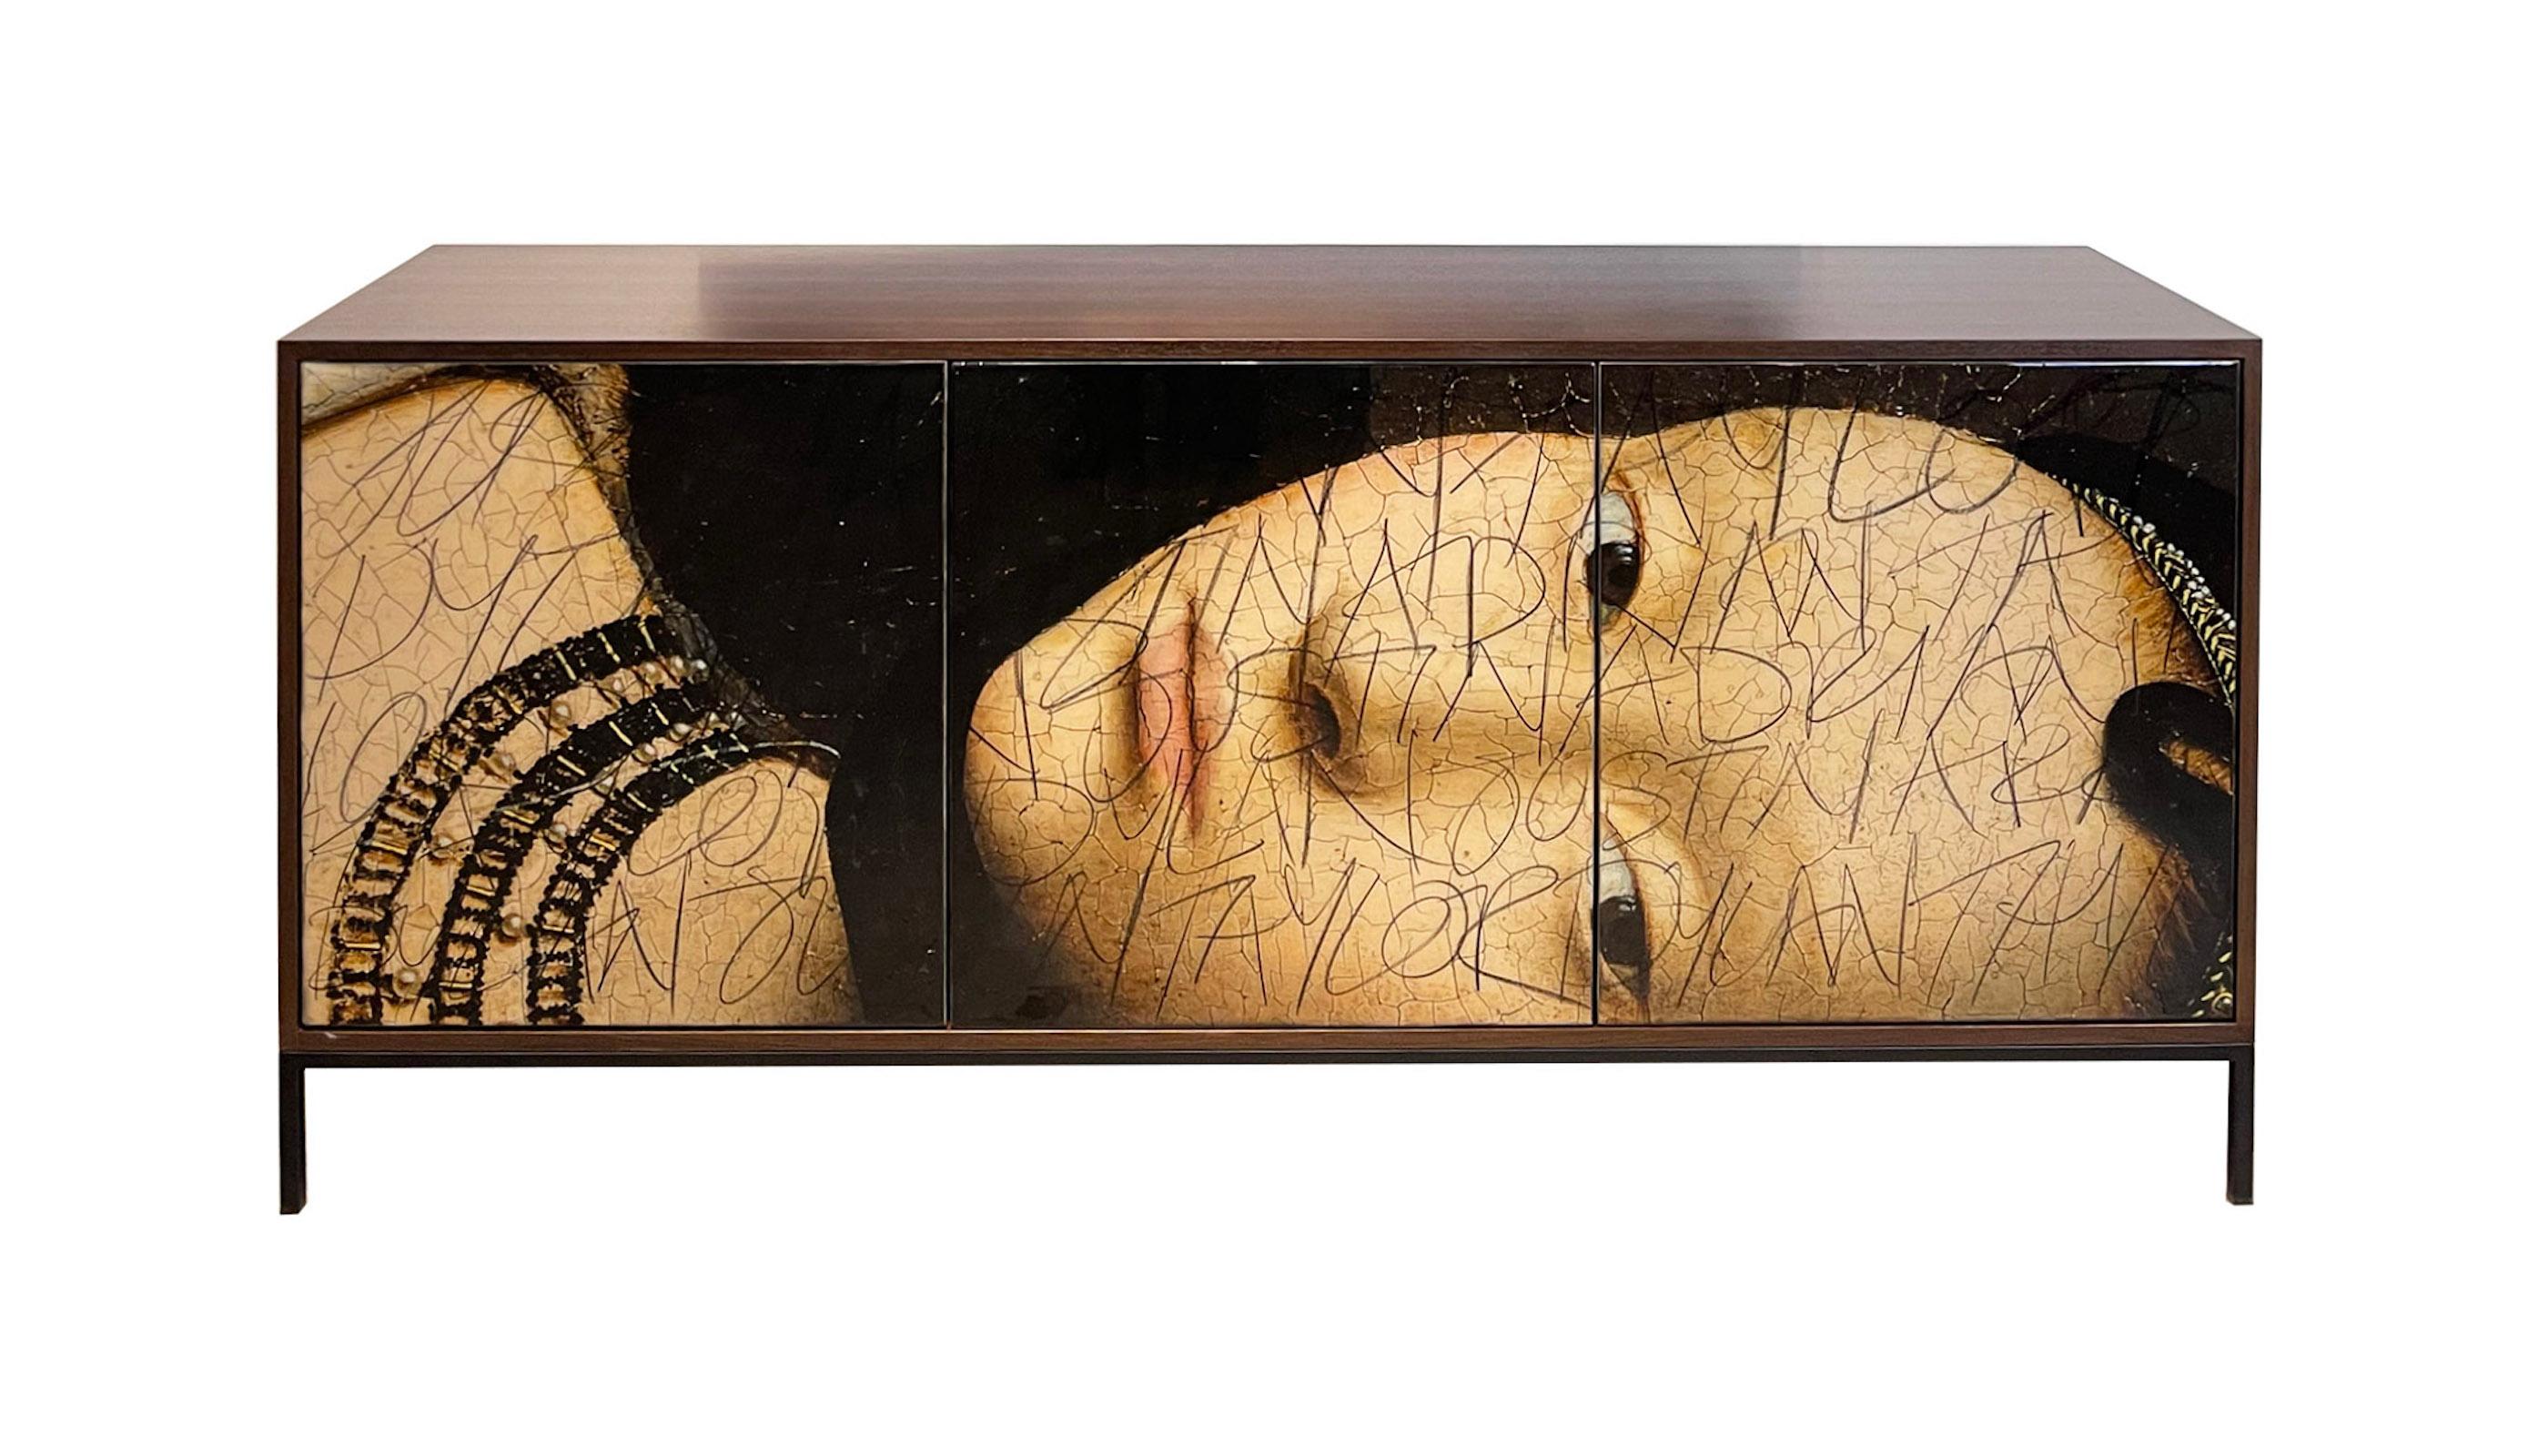 Morgan Clayhall Studio entwarf das Side Eye Kabinett nach einem Bild aus der Renaissance  Das Bild wird dann digital bearbeitet und an den Türen angebracht.  Der Künstler Murray Duncan bringt dann seine charakteristischen Graffiti-Kunstwerke auf der